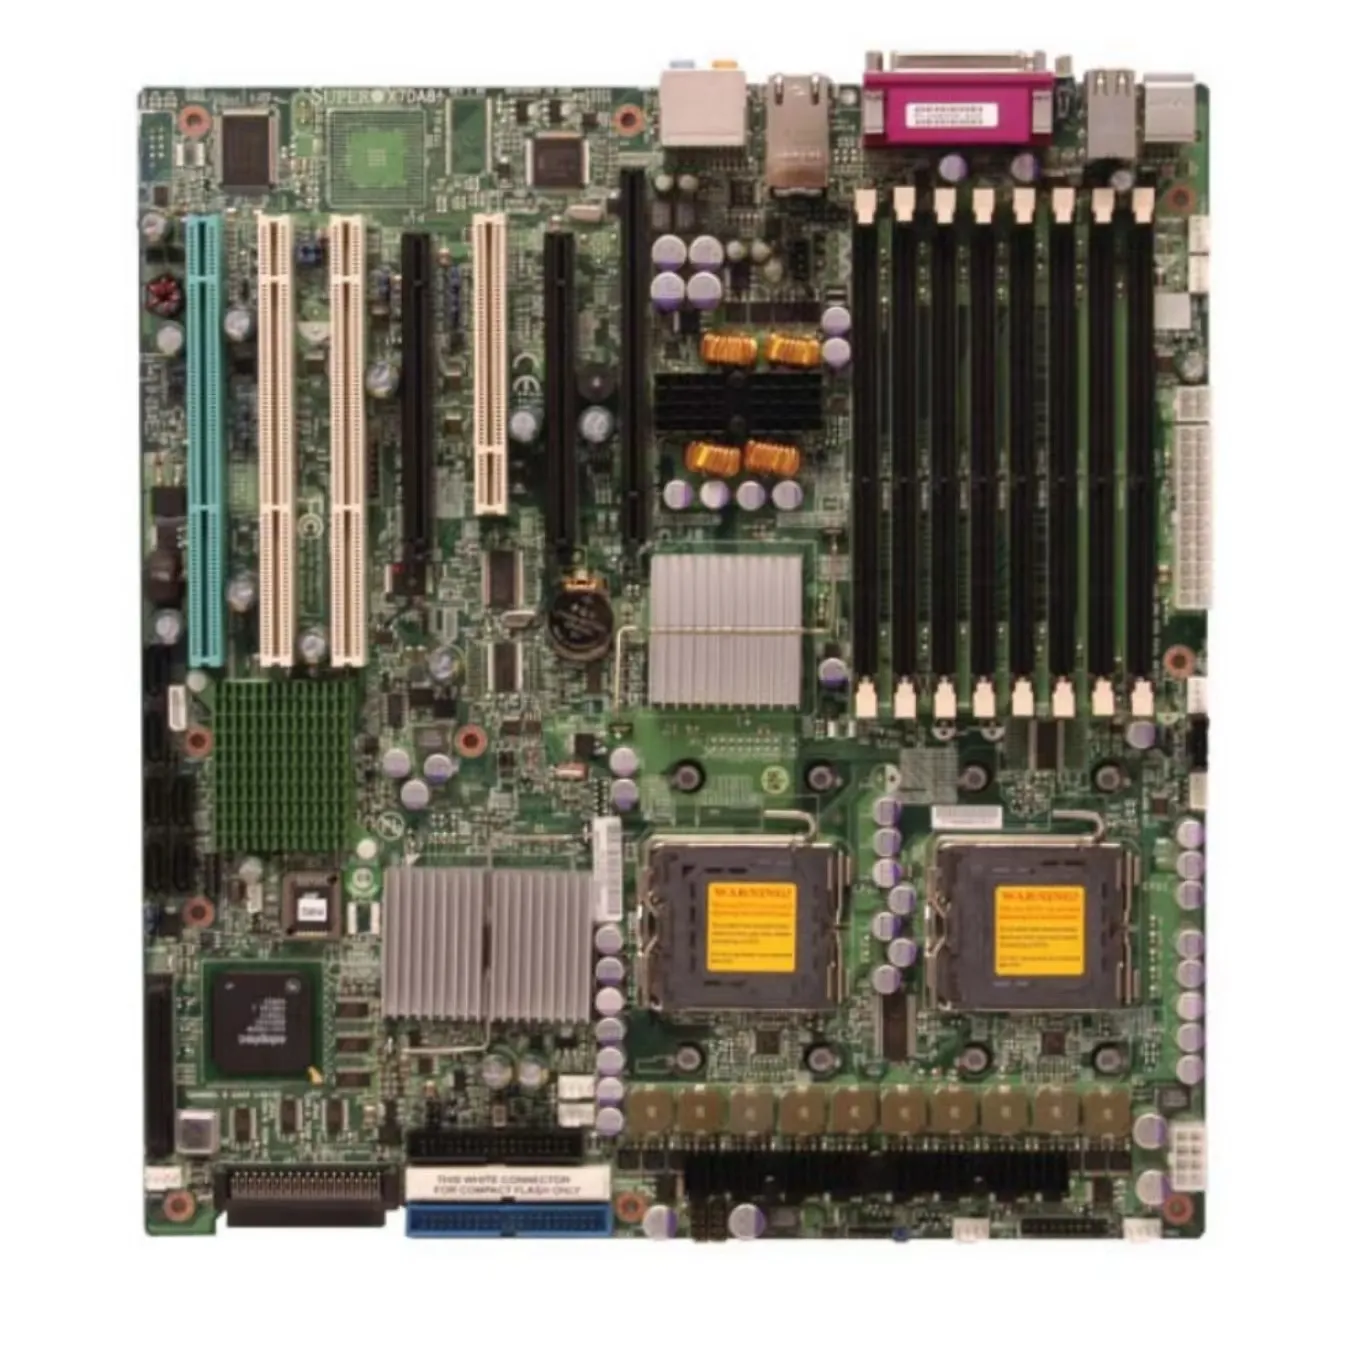 Scheda madre Supermicro MBD-X7DA8 + 5000X LGA771 Quad e Dual Core Intel Xeon SATA DDR2 IPMI